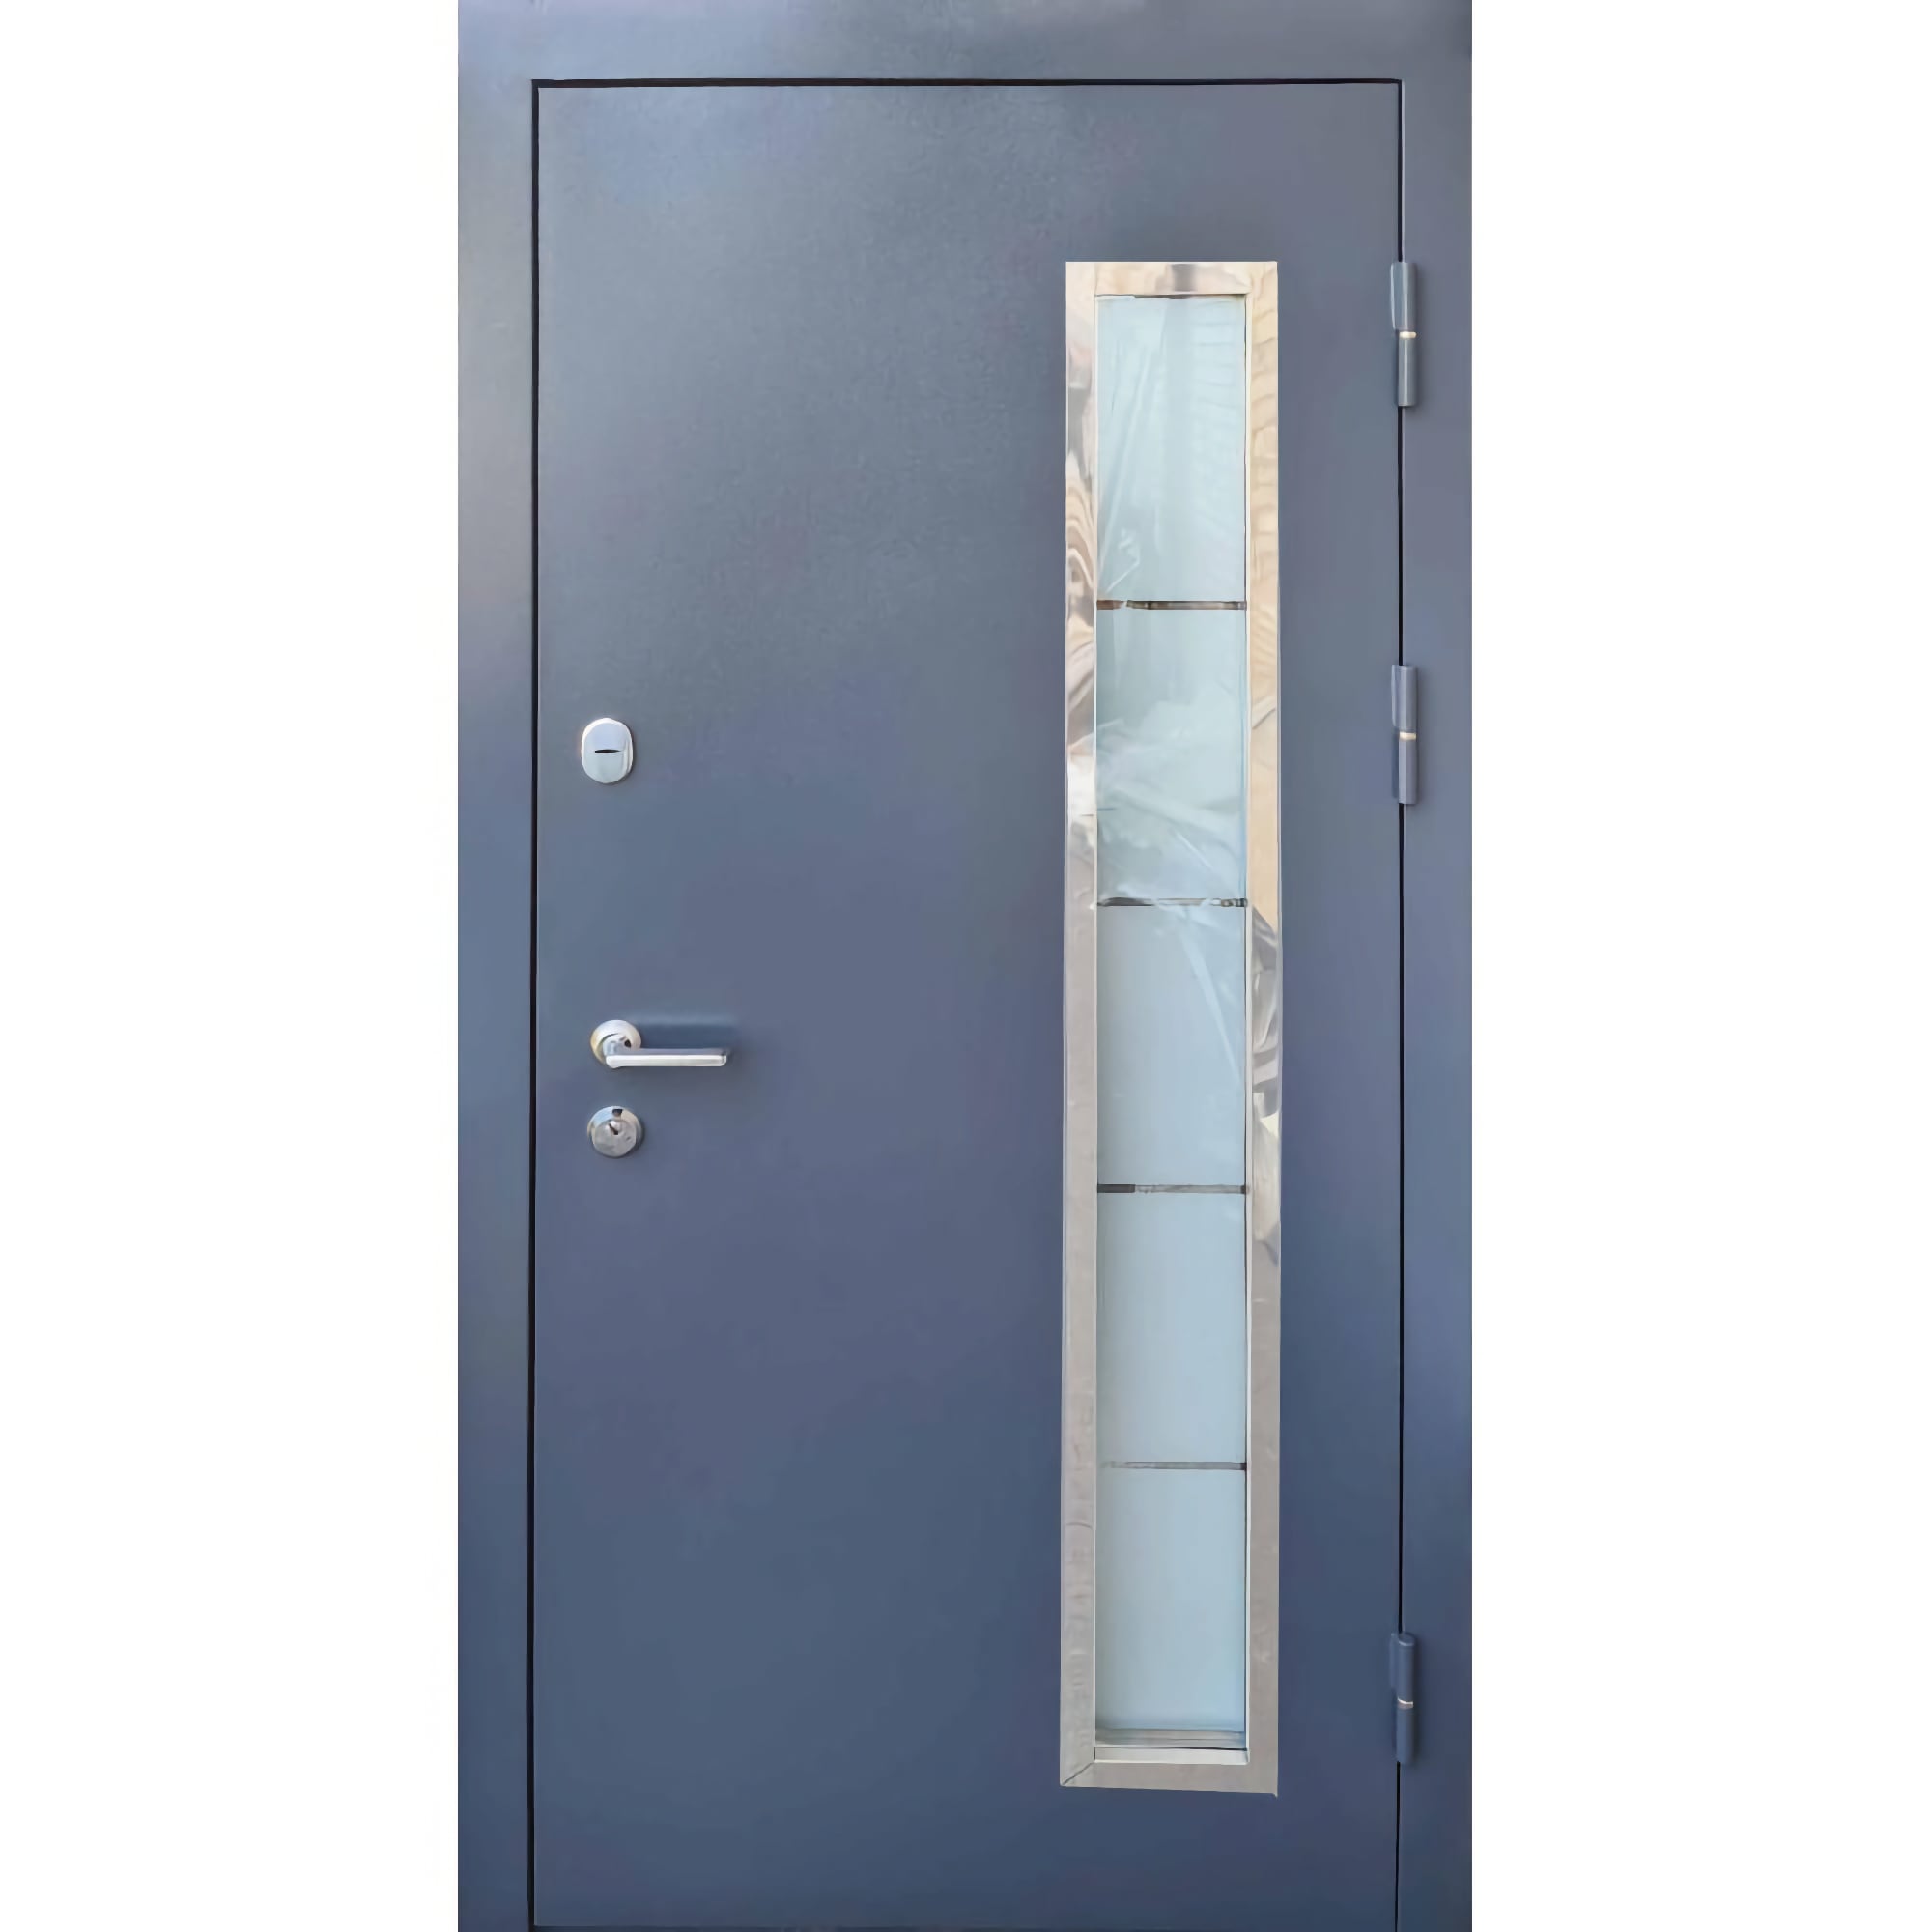 Купить бронированные двери с профессиональной установкой, под ключ - Стандарт плюс МДФ/МДФ Стеклопакет 960